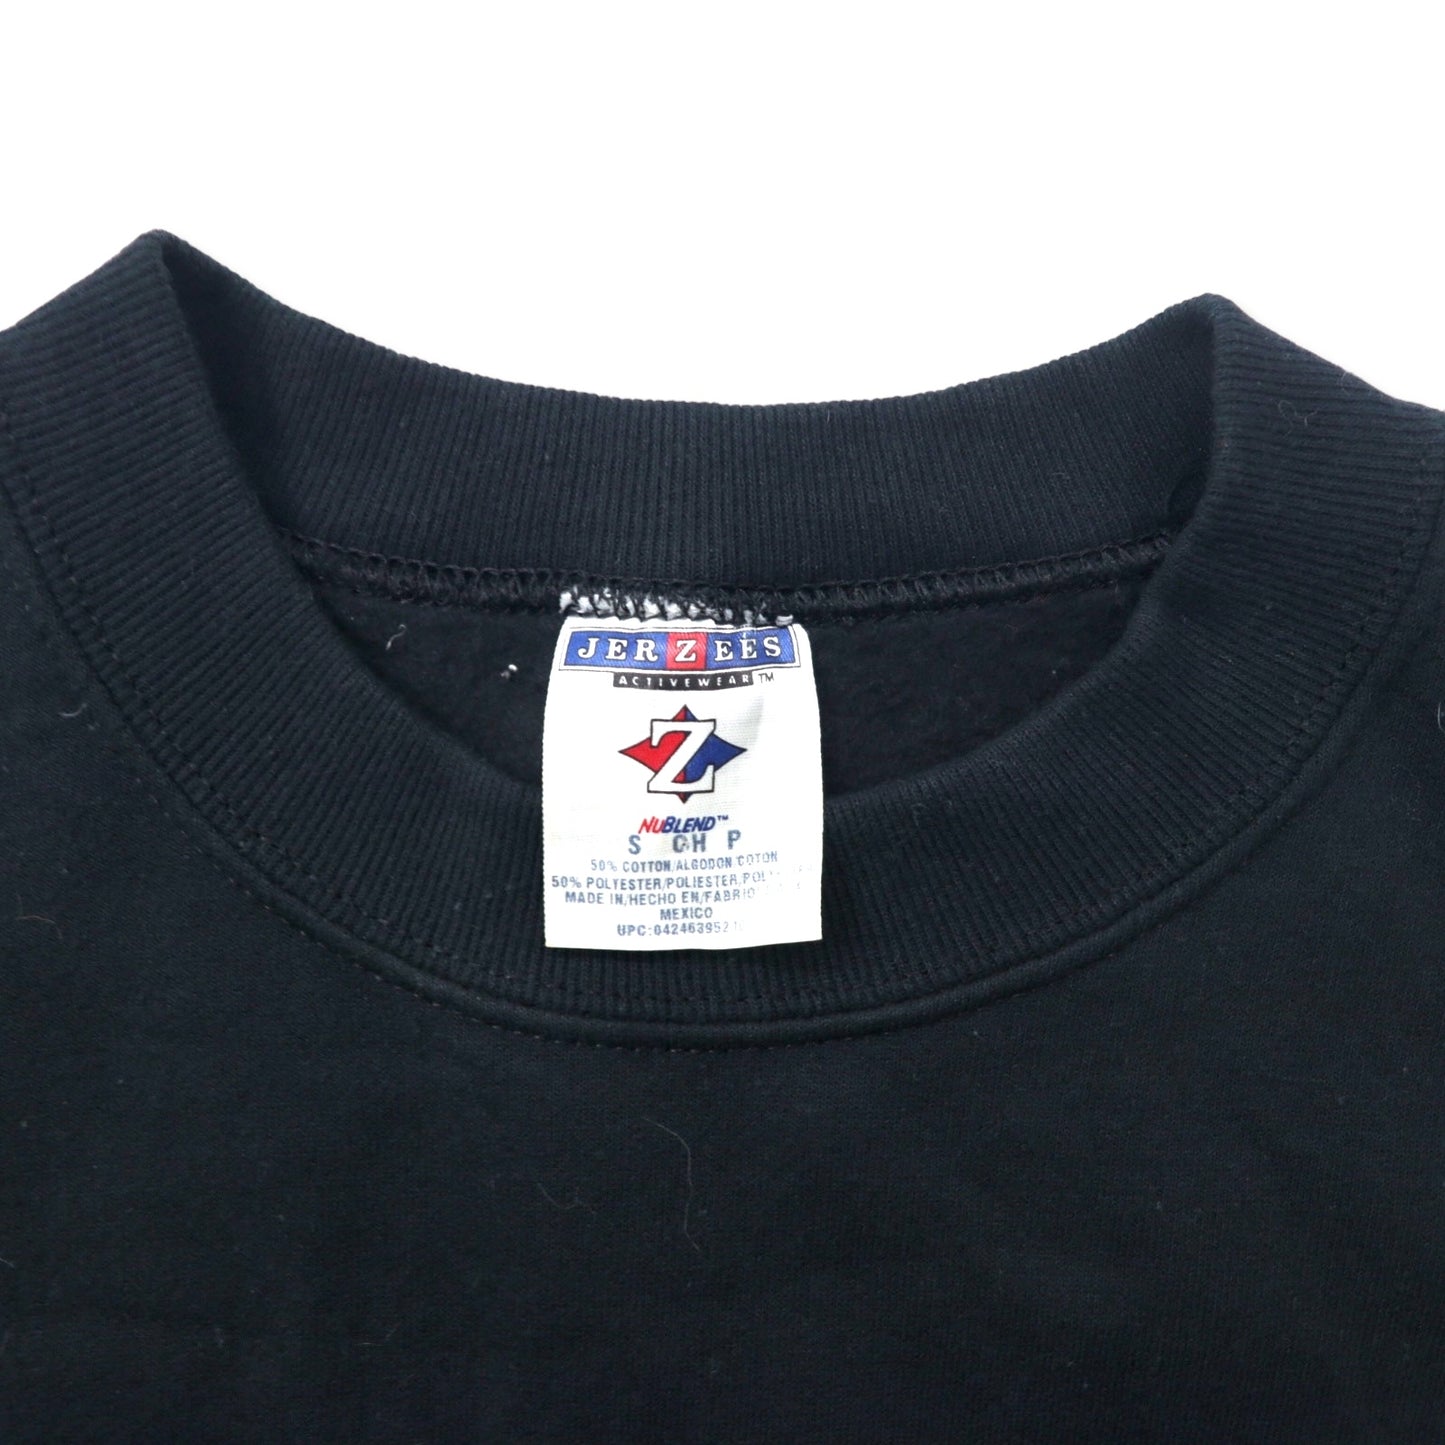 JERZEES 90年代 カレッジ刺繍 スウェット S ブラック コットン 裏起毛 BOSTON メキシコ製